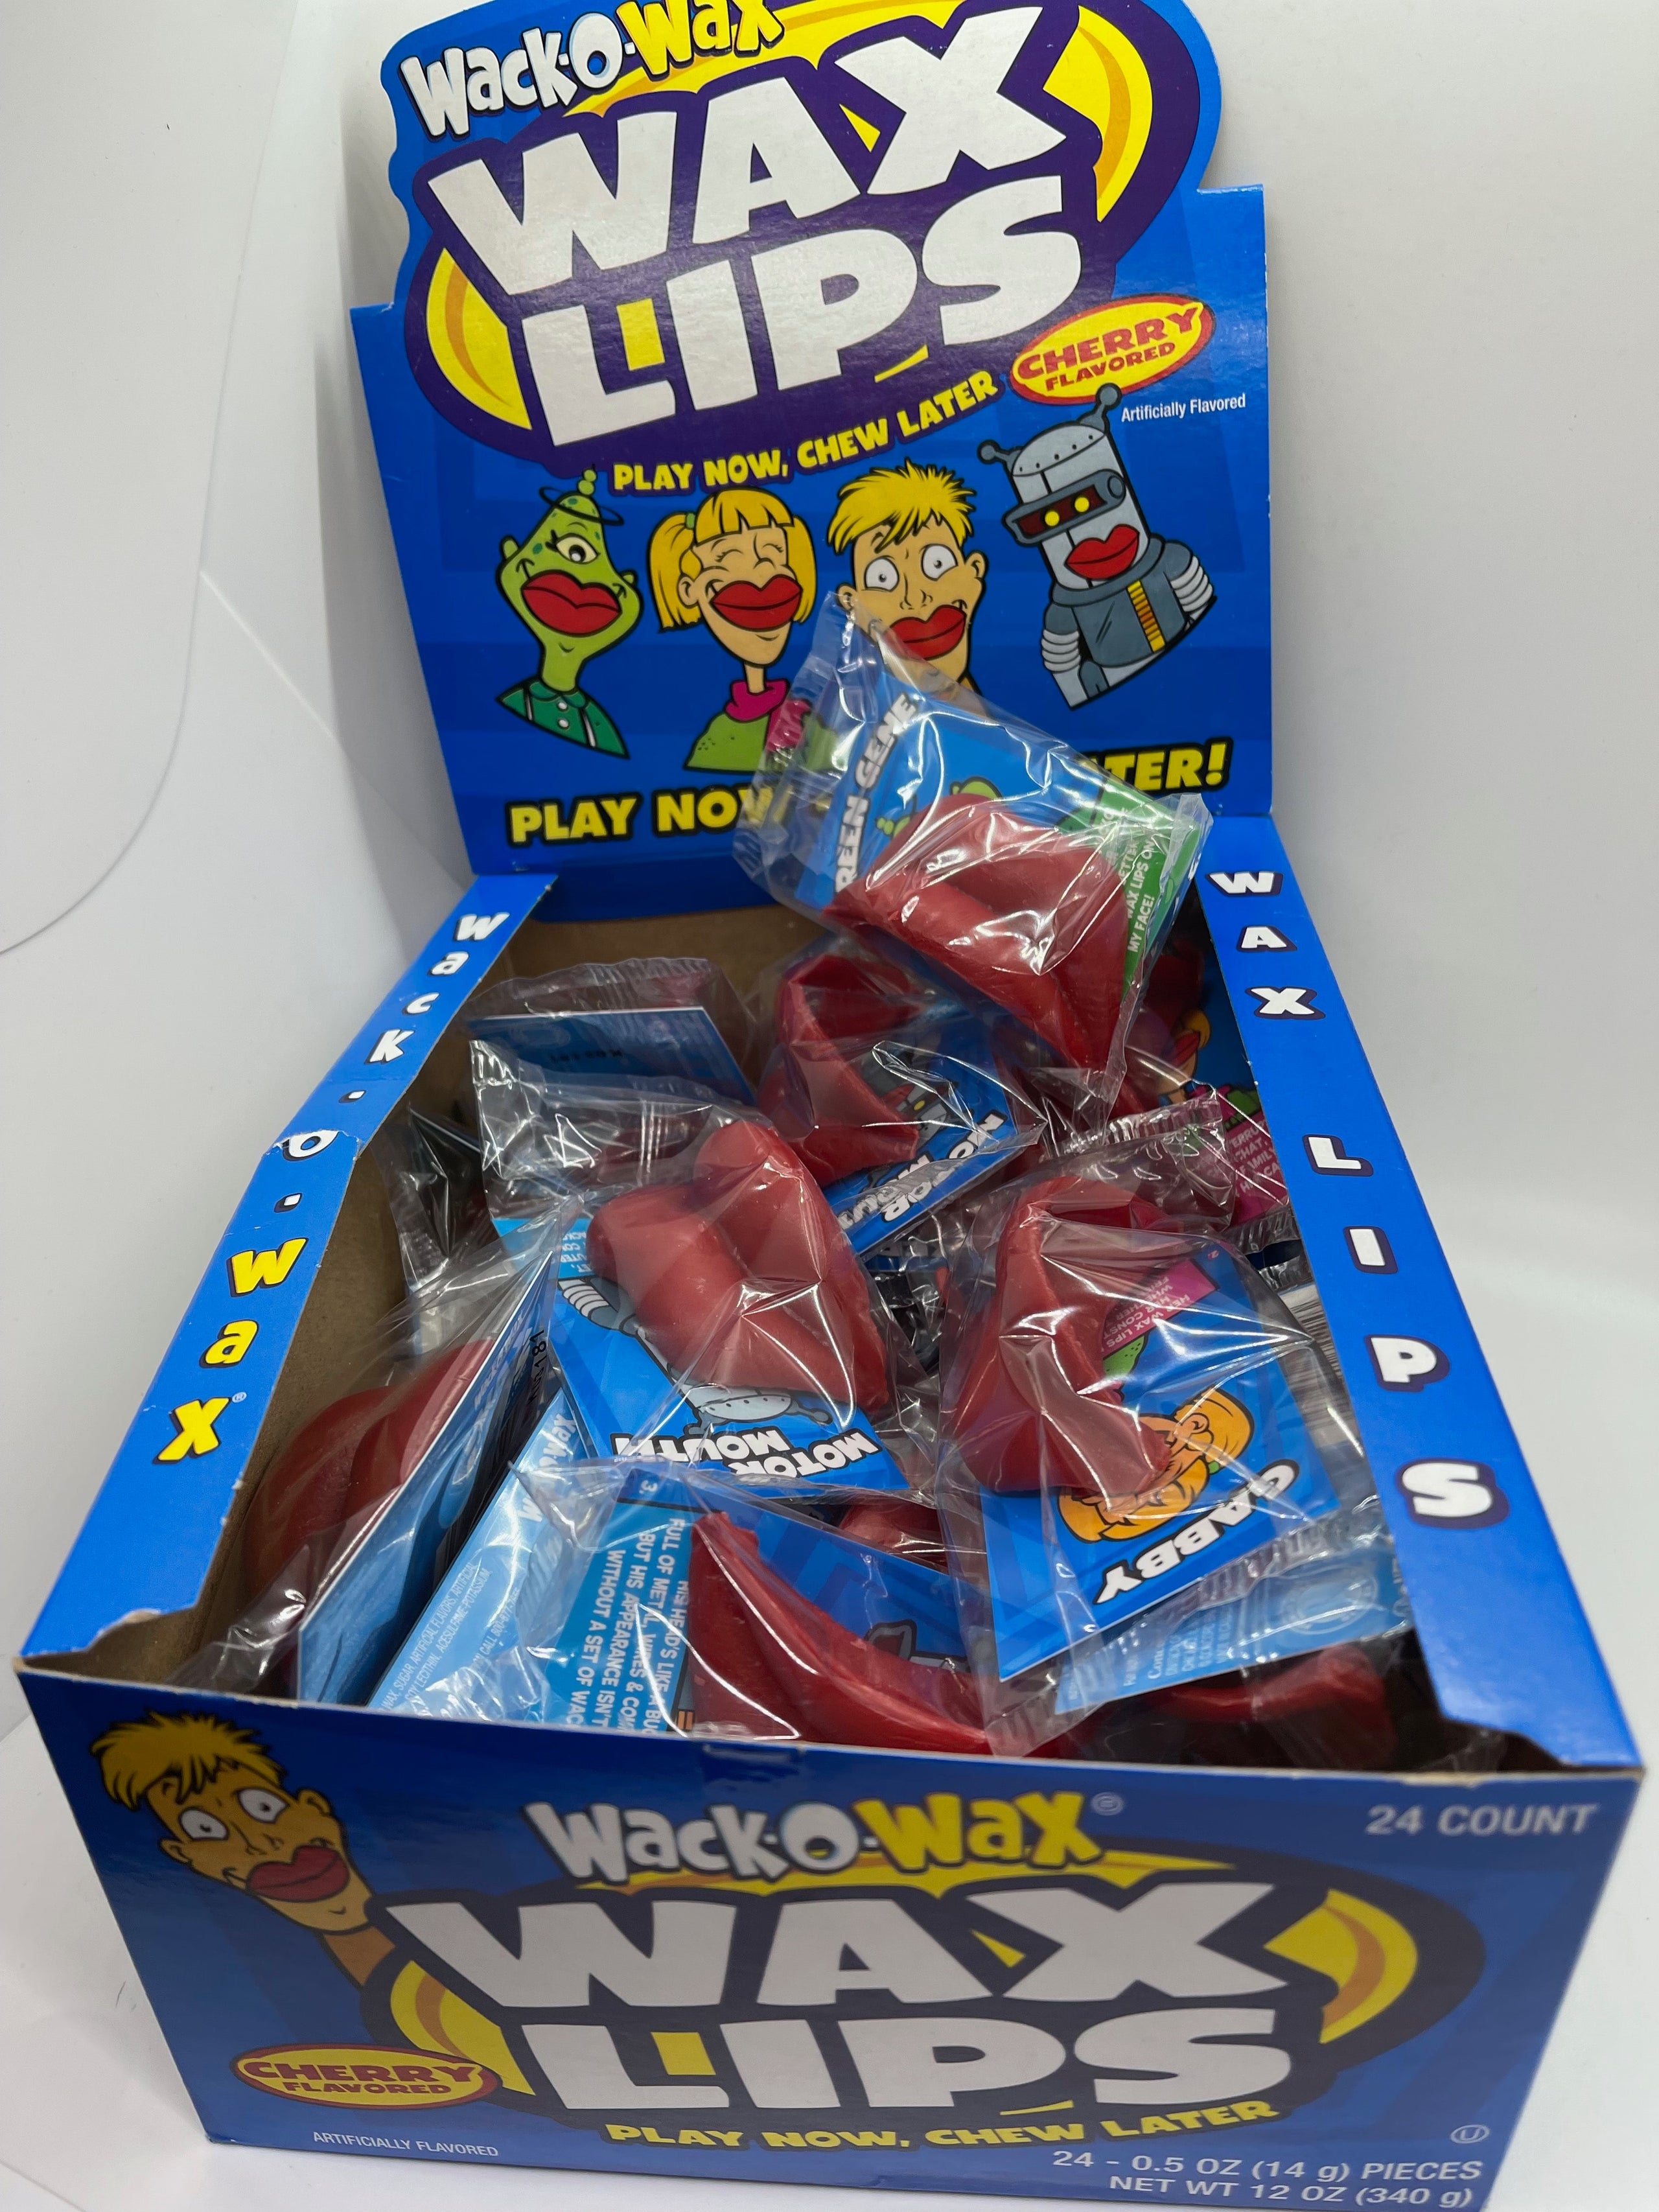 Wack-O-Wax Wax Lips Candy, 0.5 oz